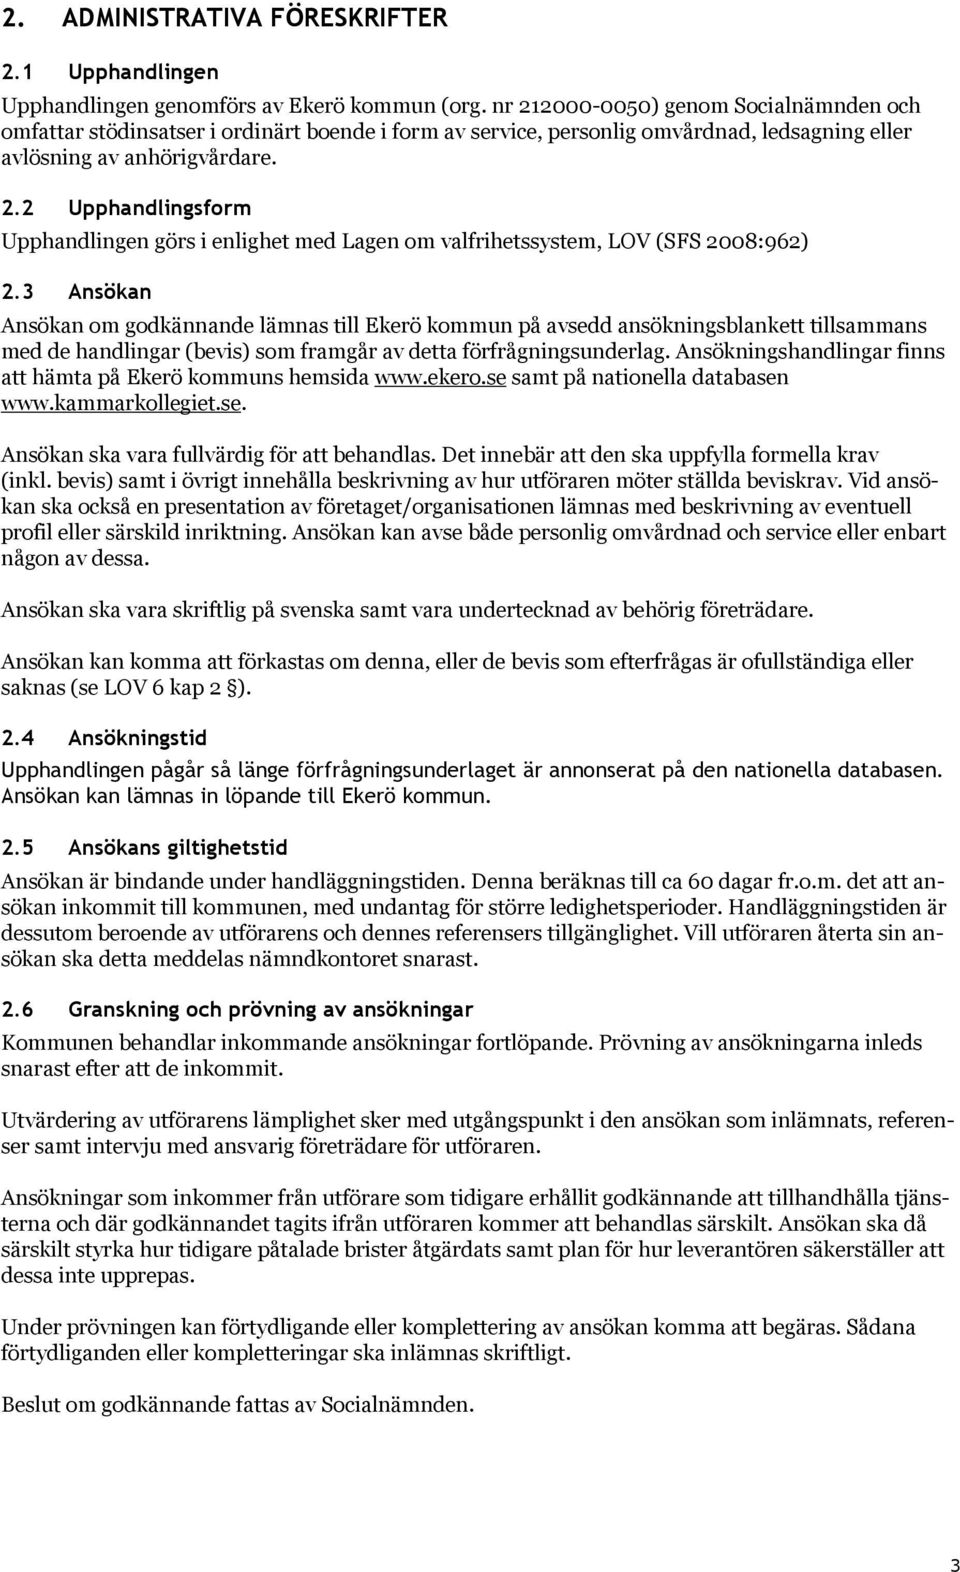 3 Ansökan Ansökan om godkännande lämnas till Ekerö kommun på avsedd ansökningsblankett tillsammans med de handlingar (bevis) som framgår av detta förfrågningsunderlag.